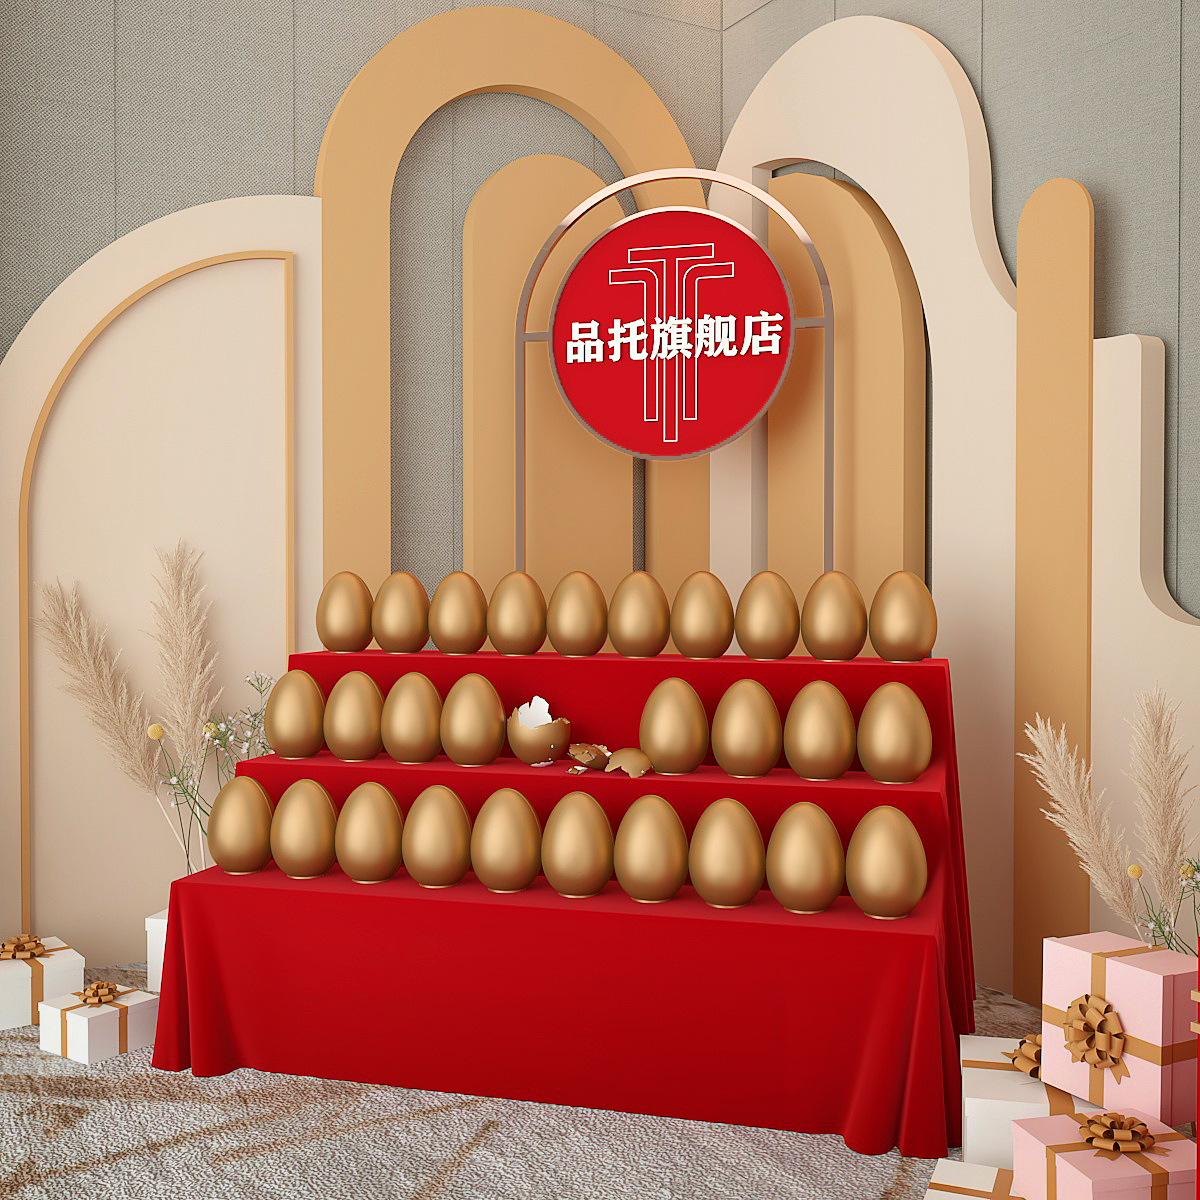 金蛋架子定制梯形展示台金蛋展示架创意砸金蛋桌子台子金蛋展架